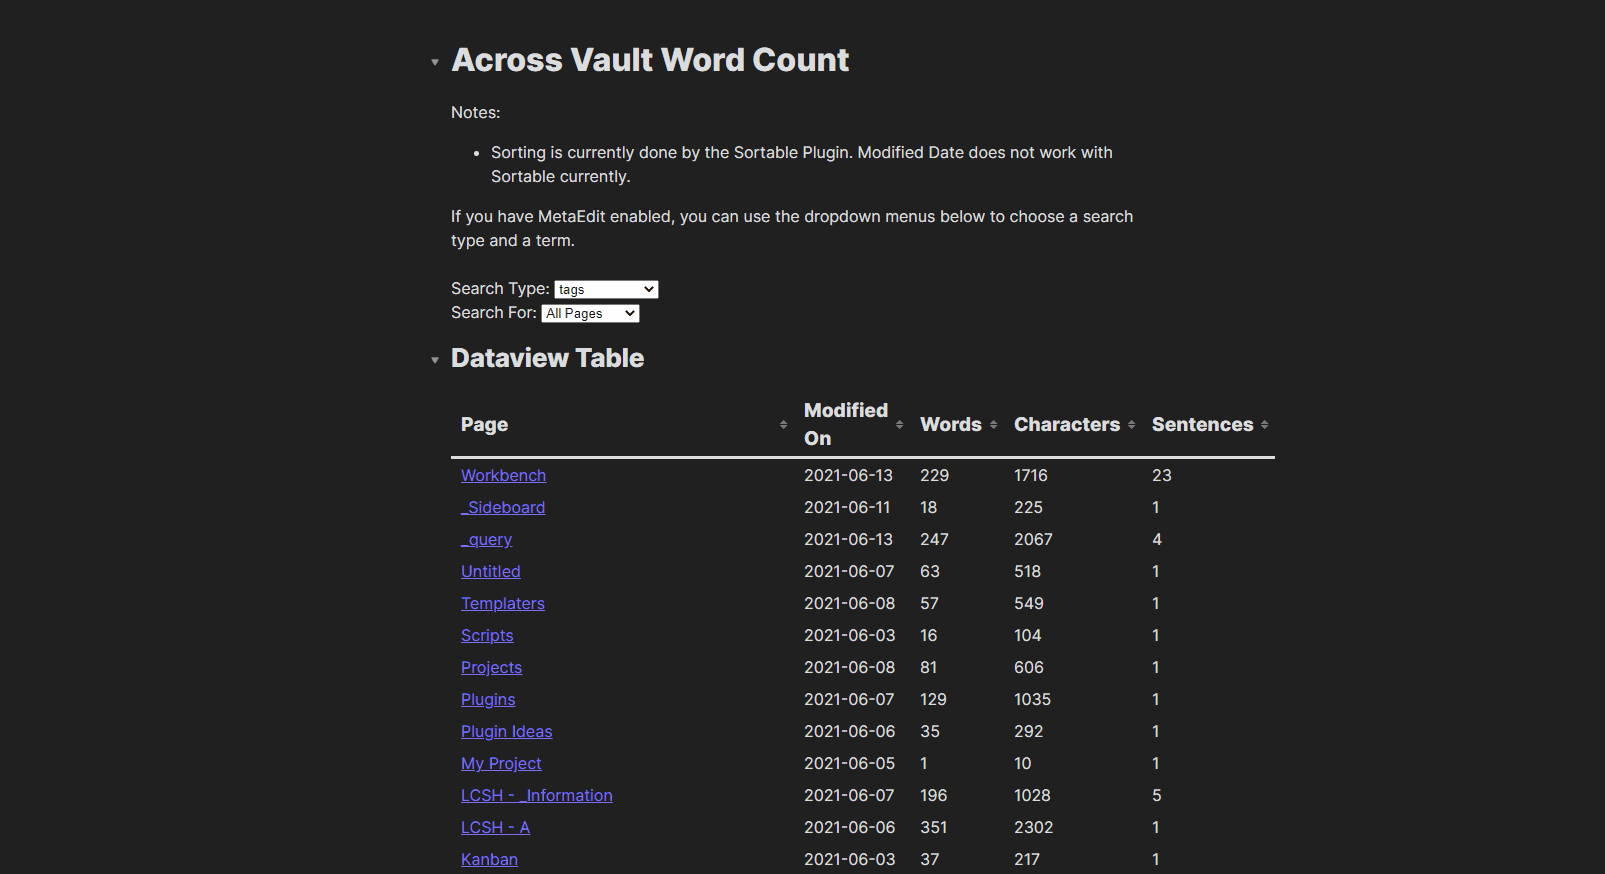 Across Vault Word Count